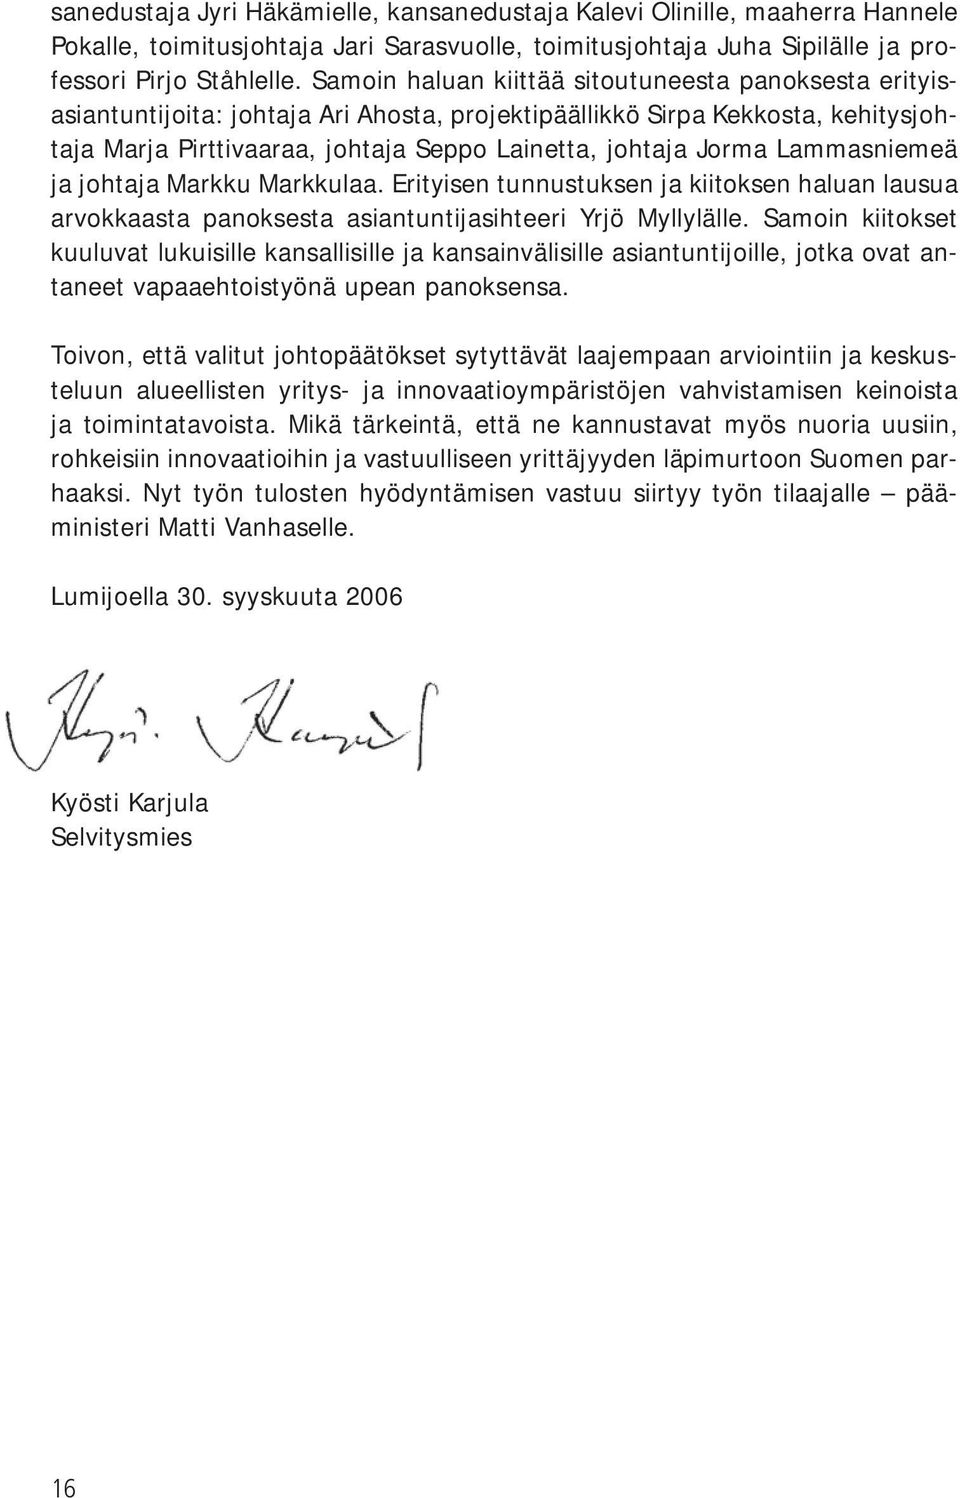 Lammasniemeä ja johtaja Markku Markkulaa. Erityisen tunnustuksen ja kiitoksen haluan lausua arvokkaasta panoksesta asiantuntijasihteeri Yrjö Myllylälle.